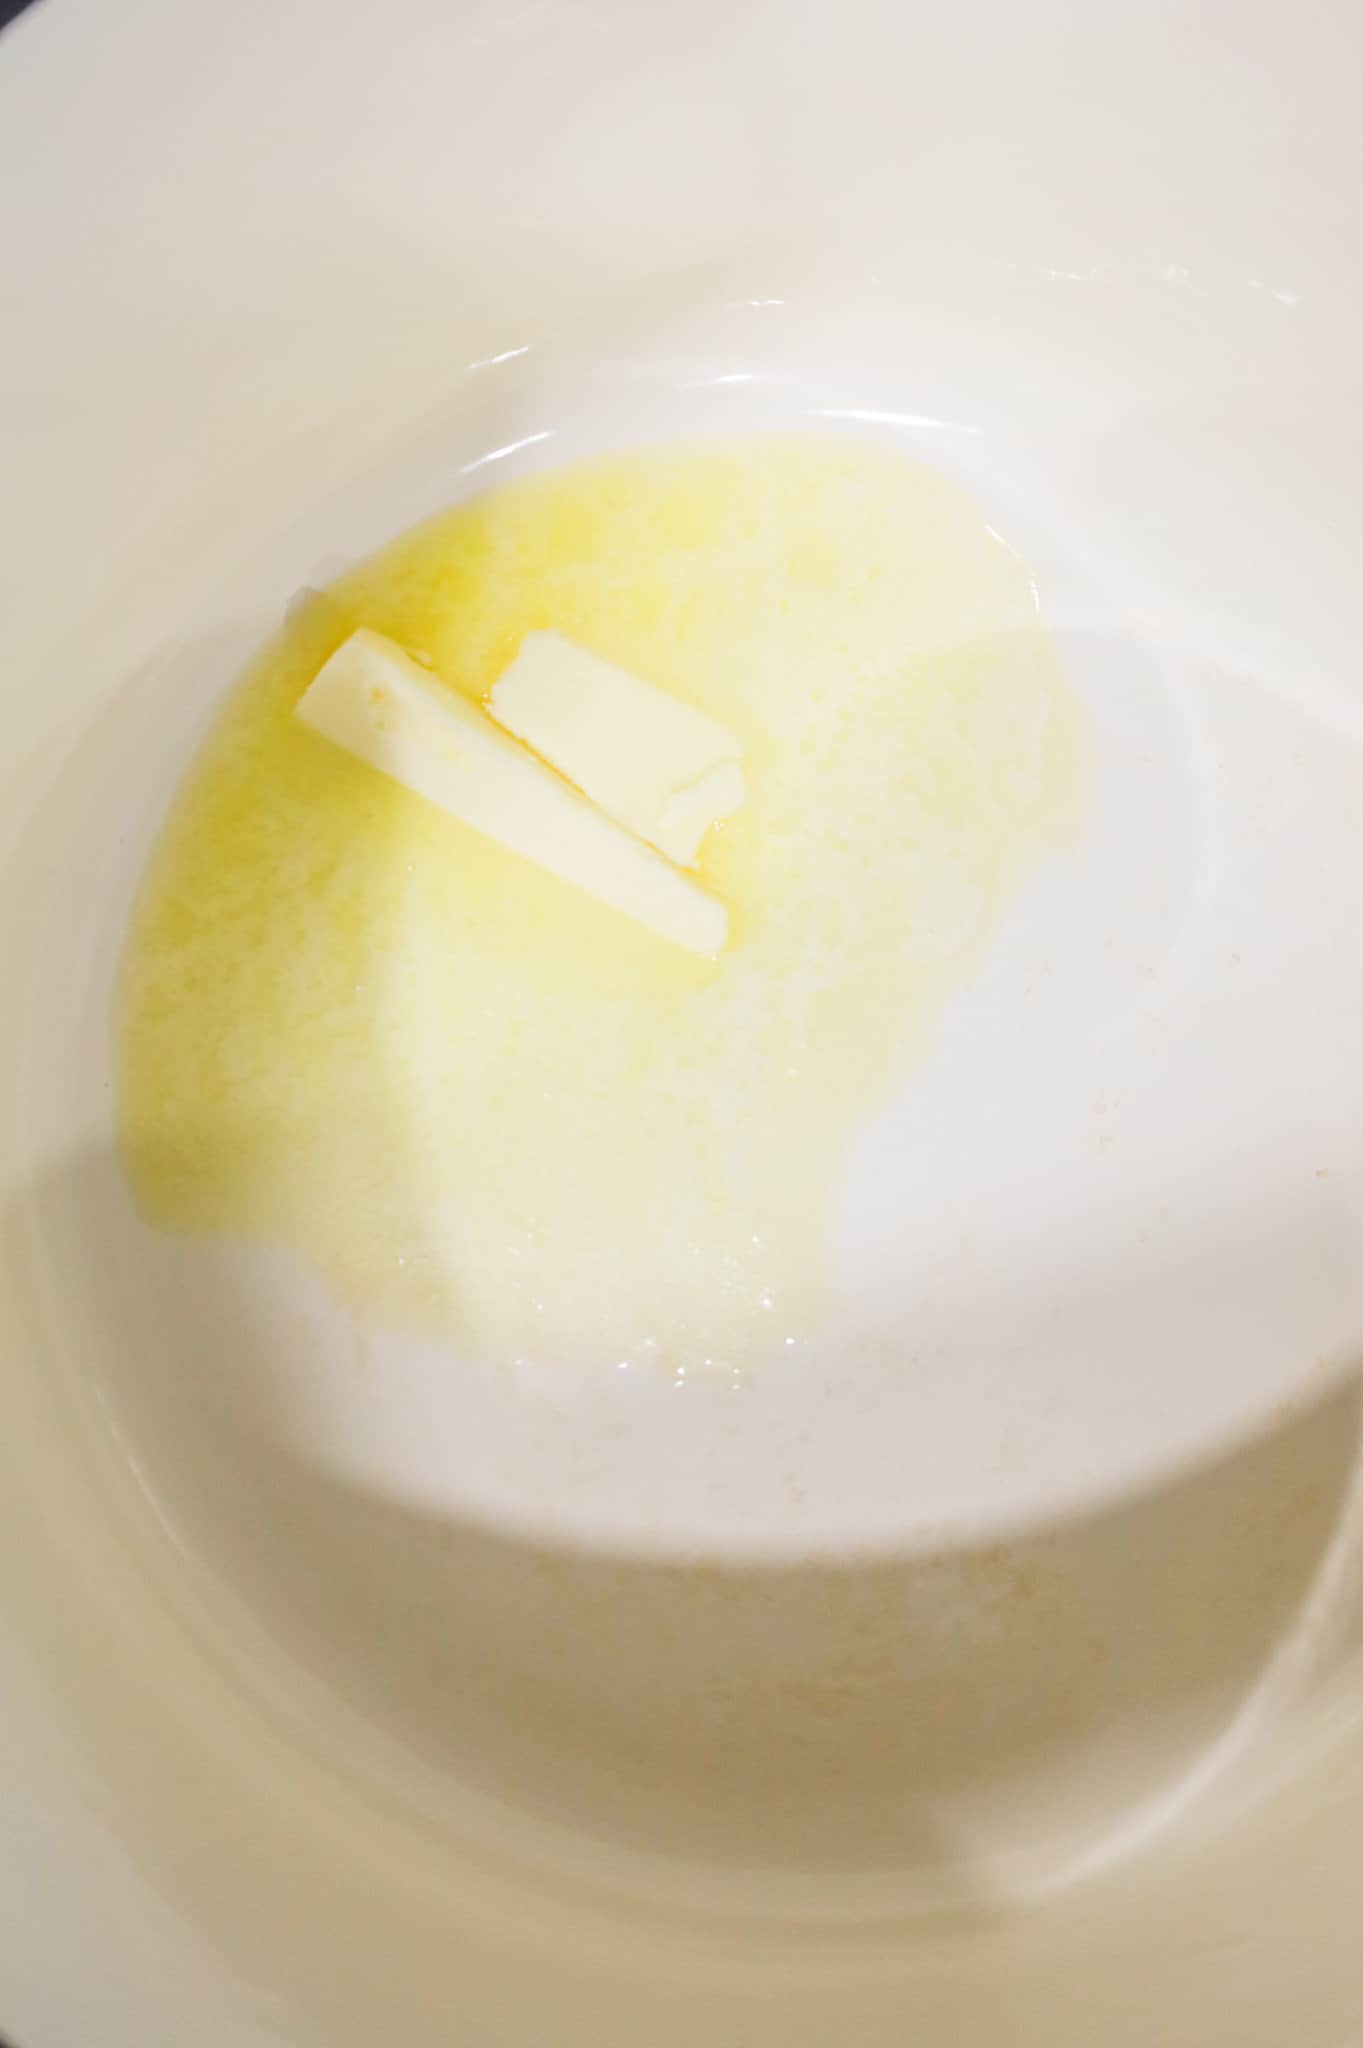 butter melting in a pot